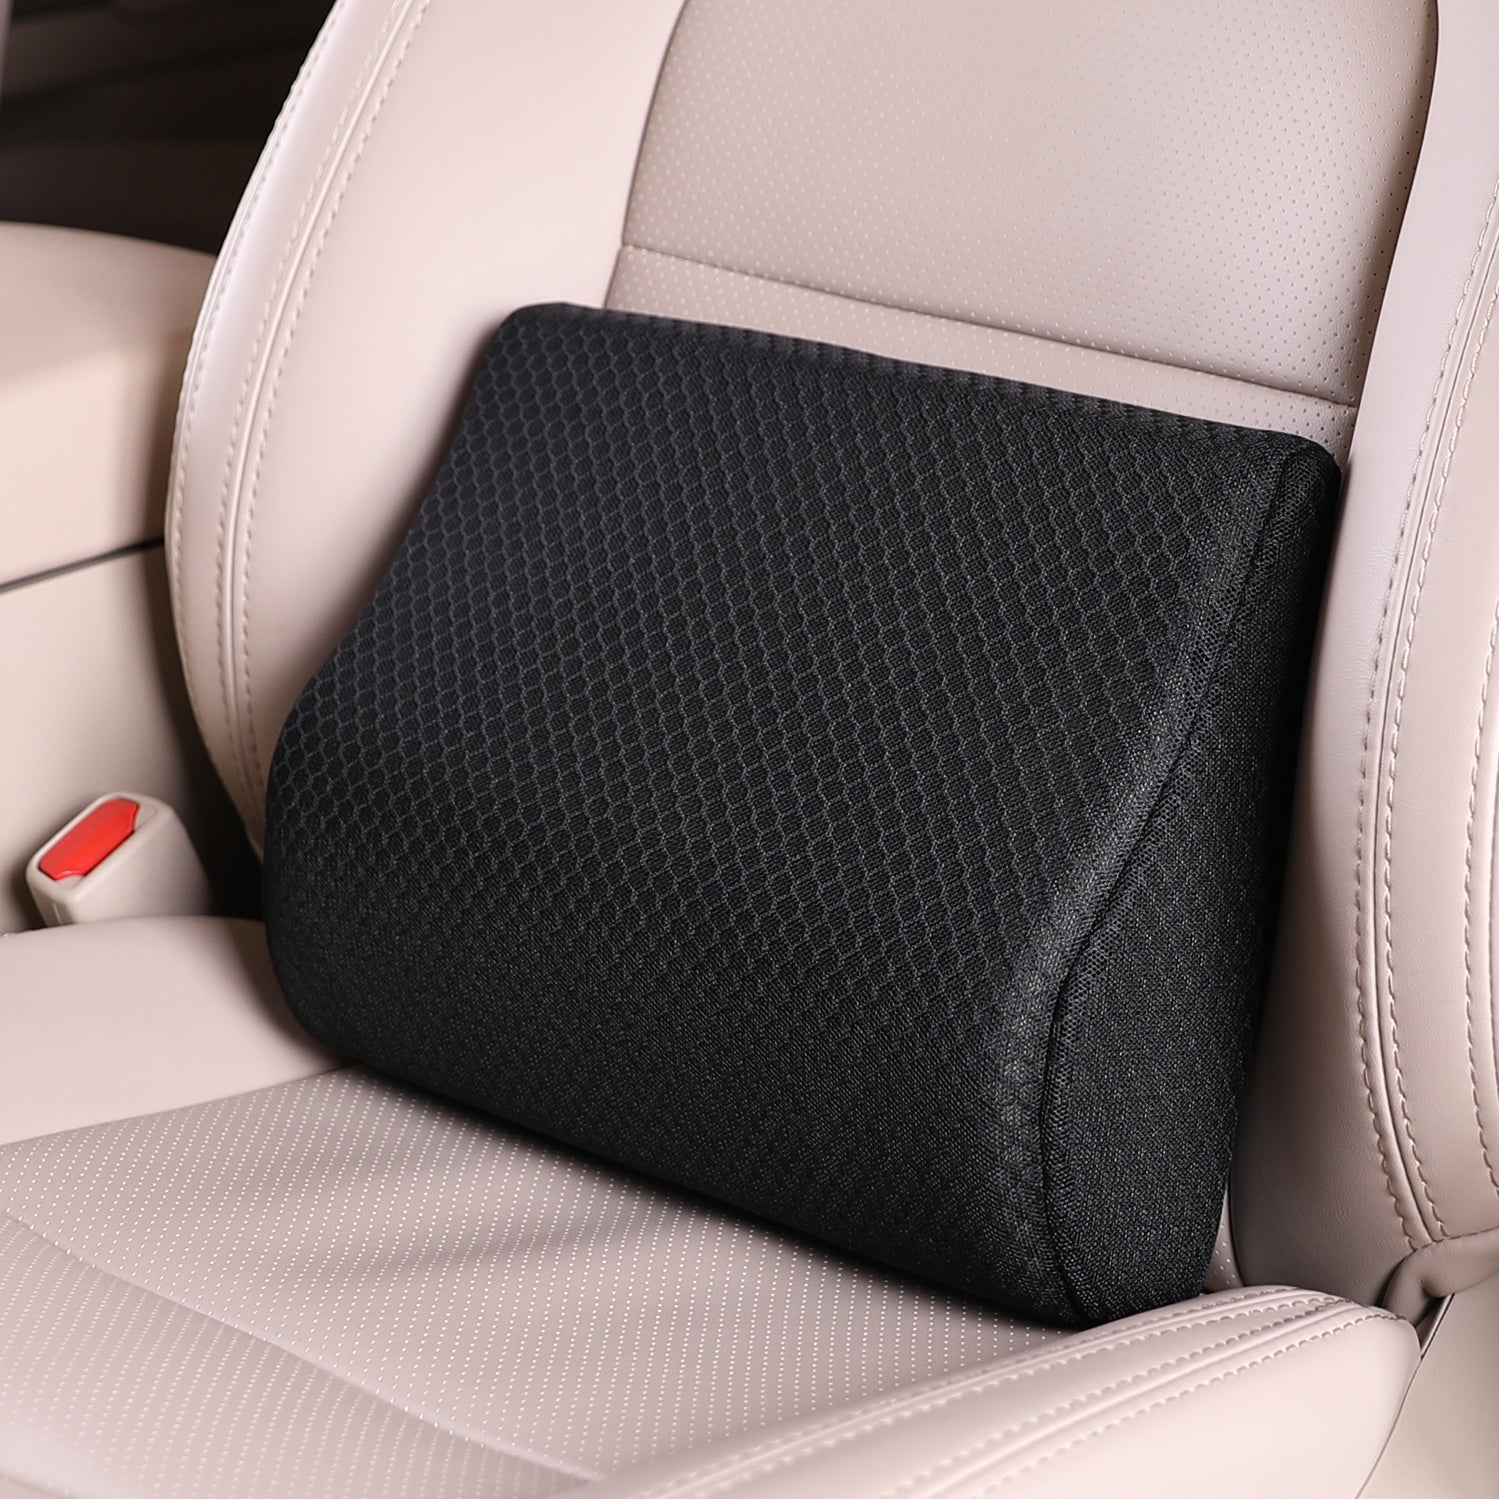 Car Seat Memory Foam Cushion Cover Sciatica & Lower Back Pain